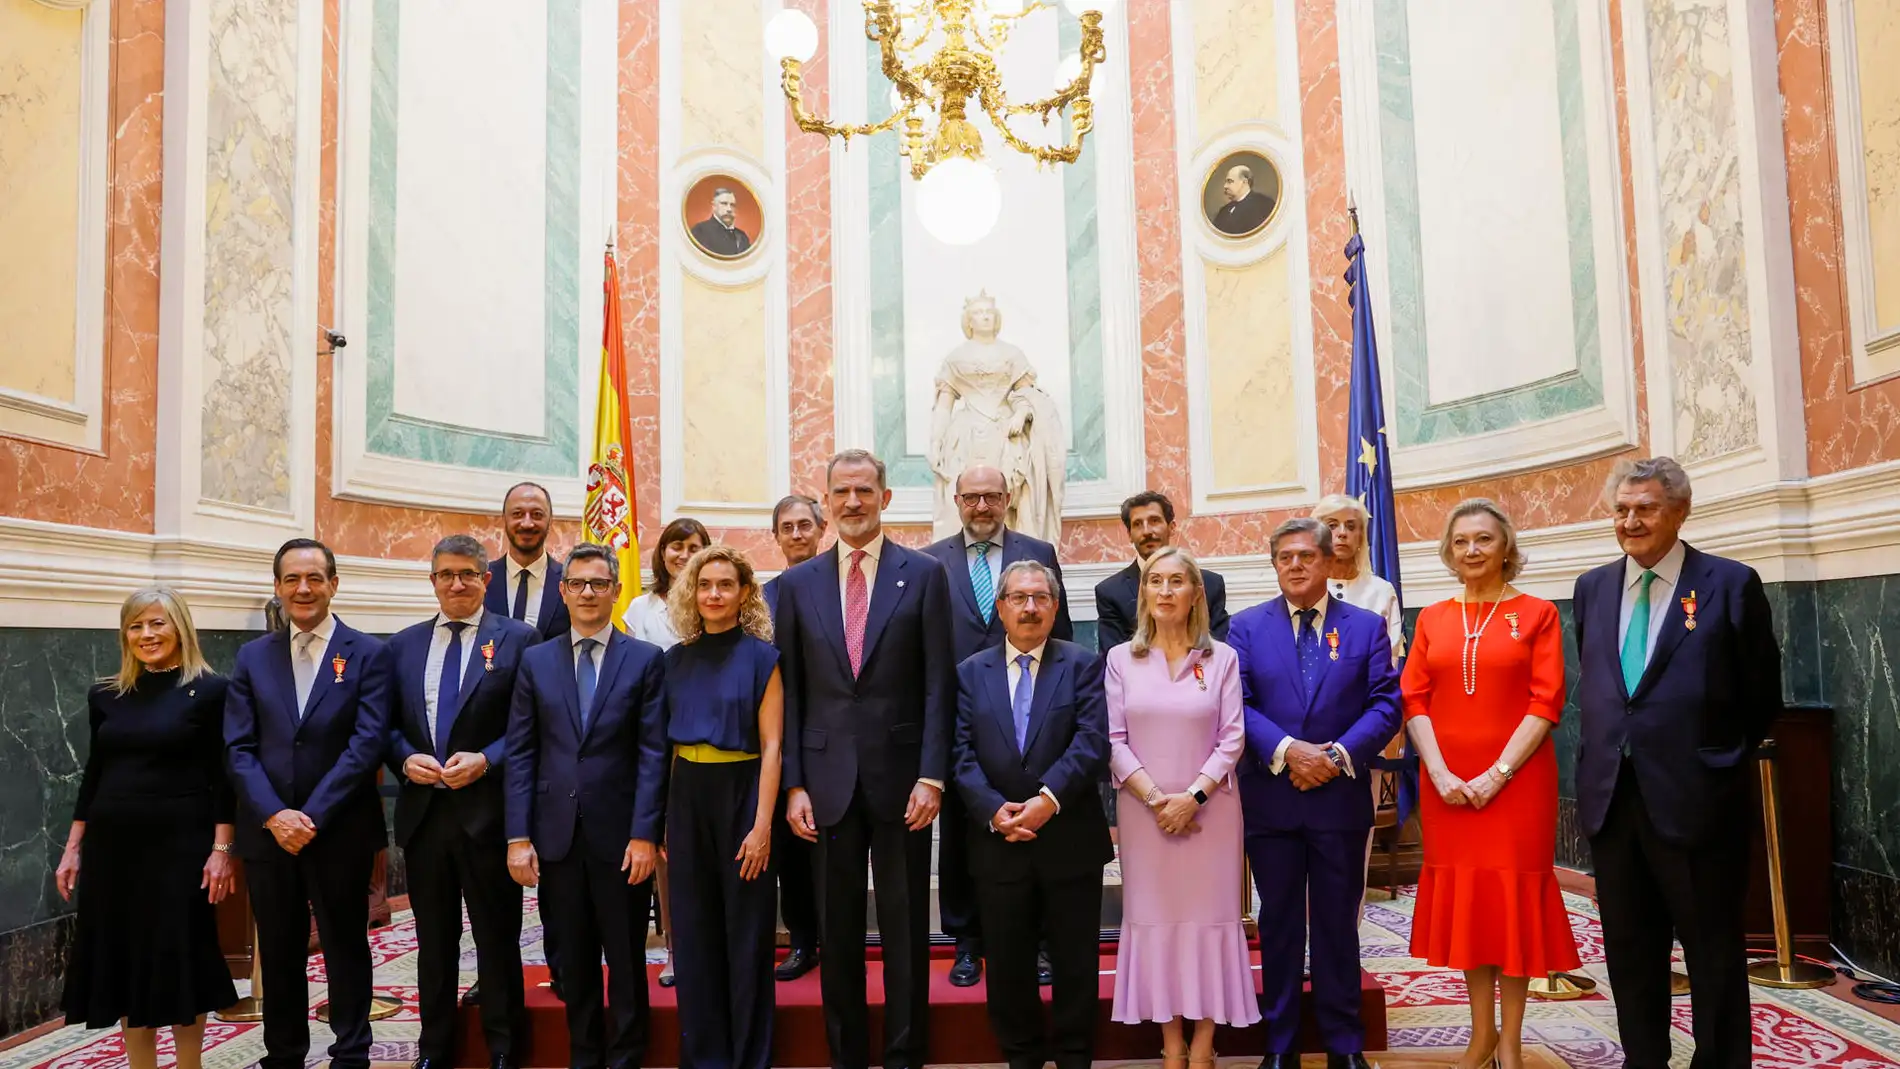 El rey Felipe VI posa para fotografía de familia durante la entrega de la Medalla del Congreso de los Diputados a los expresidentes de la Cámara Baja del actual periodo constitucional